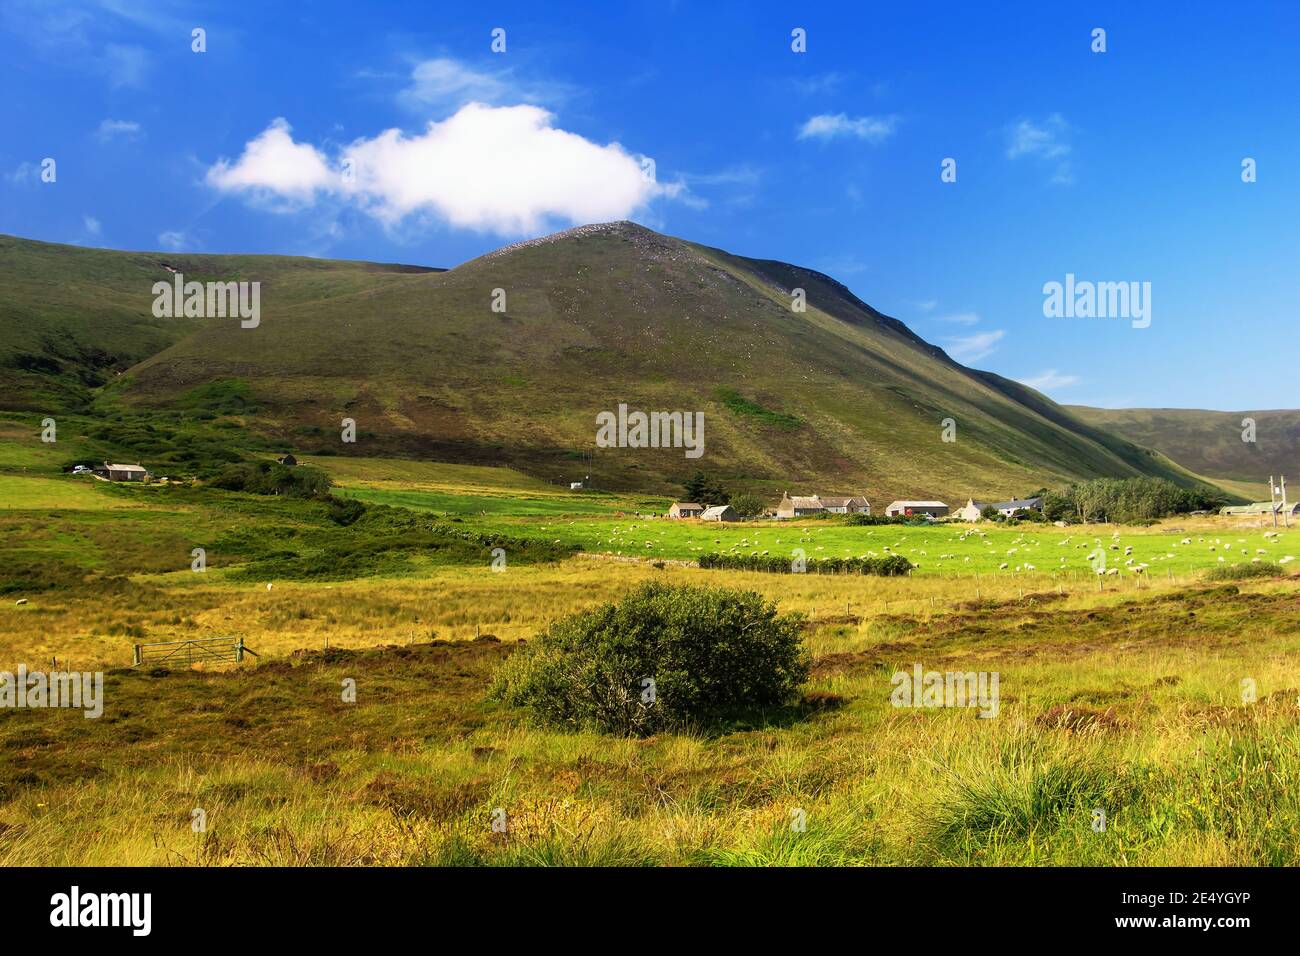 Grande collina marrone con piante verdi in primo piano e cielo blu, nuvole bianche e case in pietra costruita sull'isola scozzese Hoy su Orkney Foto Stock